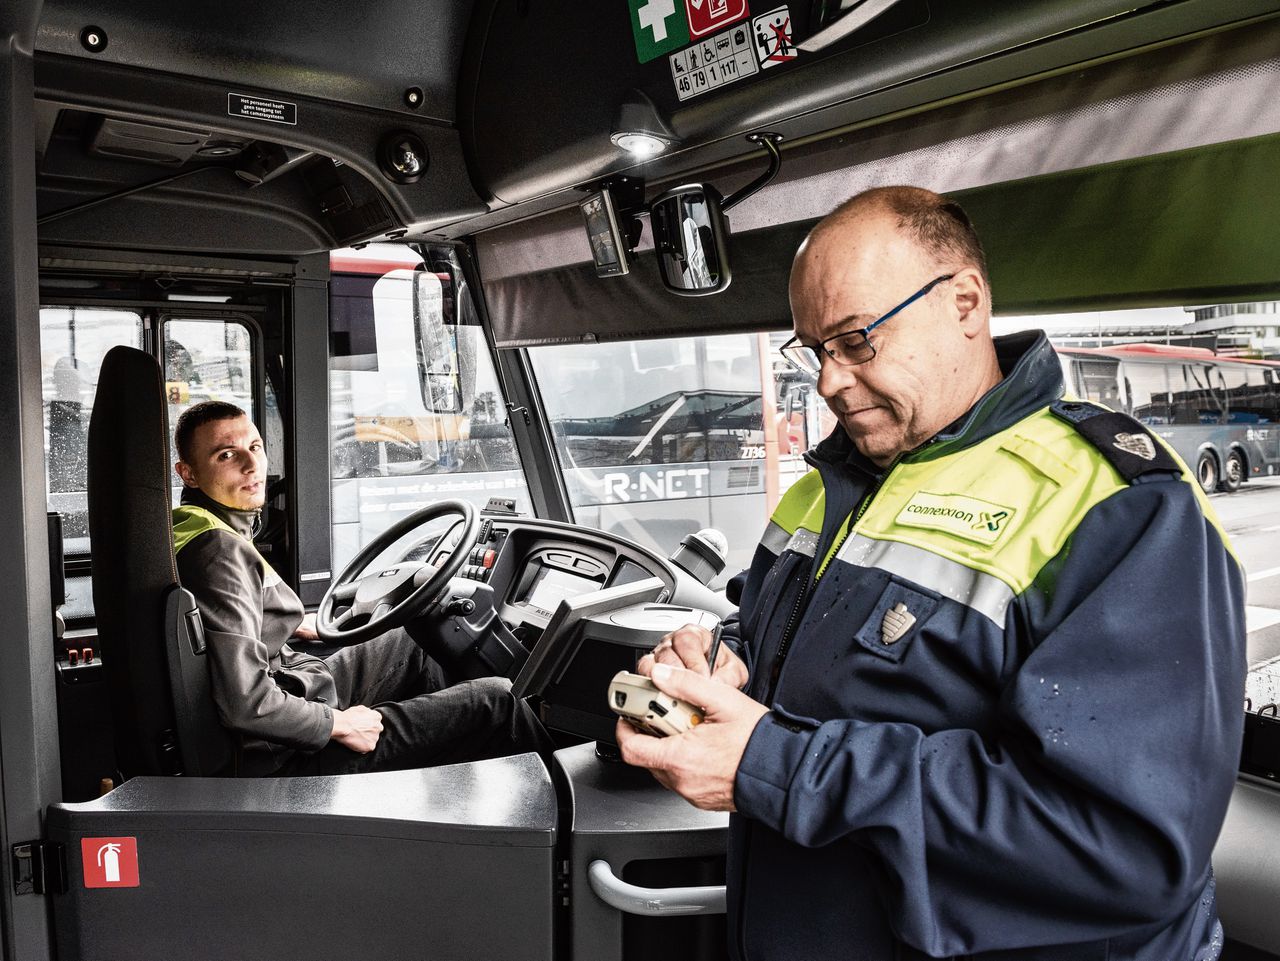 Connexxion zet op zijn bussen, zoals hier op Schiphol, handhavers in wanneer chauffeurs last hebben van agressieve passagiers. In teams controleren zij buskaartjes en houden orde bij haltes.